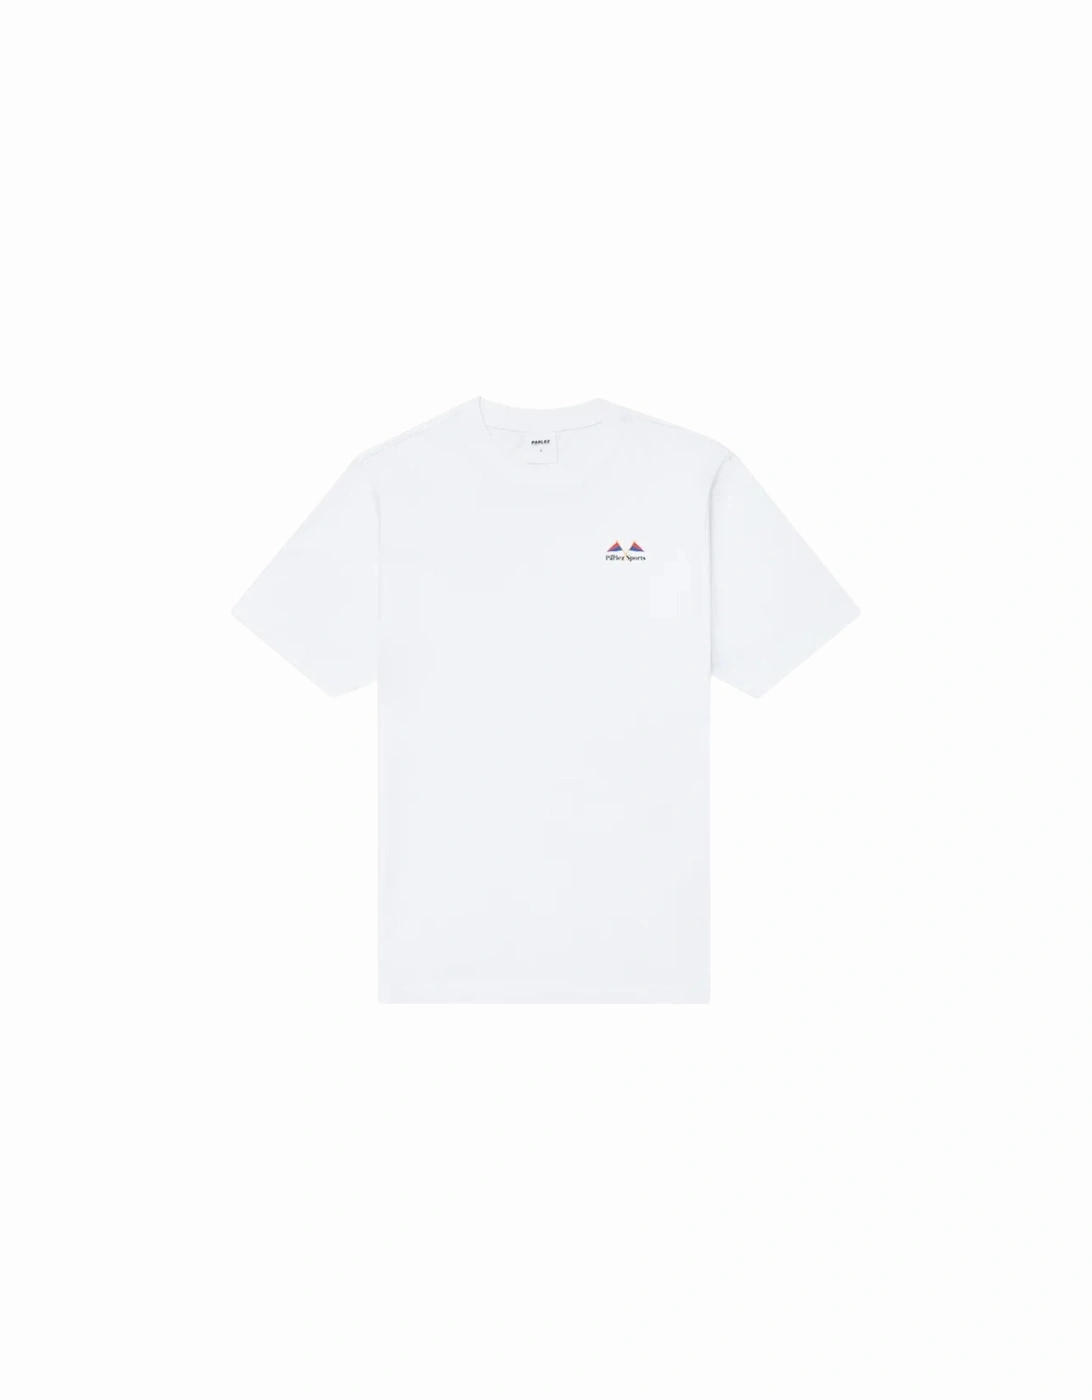 Yard T-Shirt - White, 6 of 5